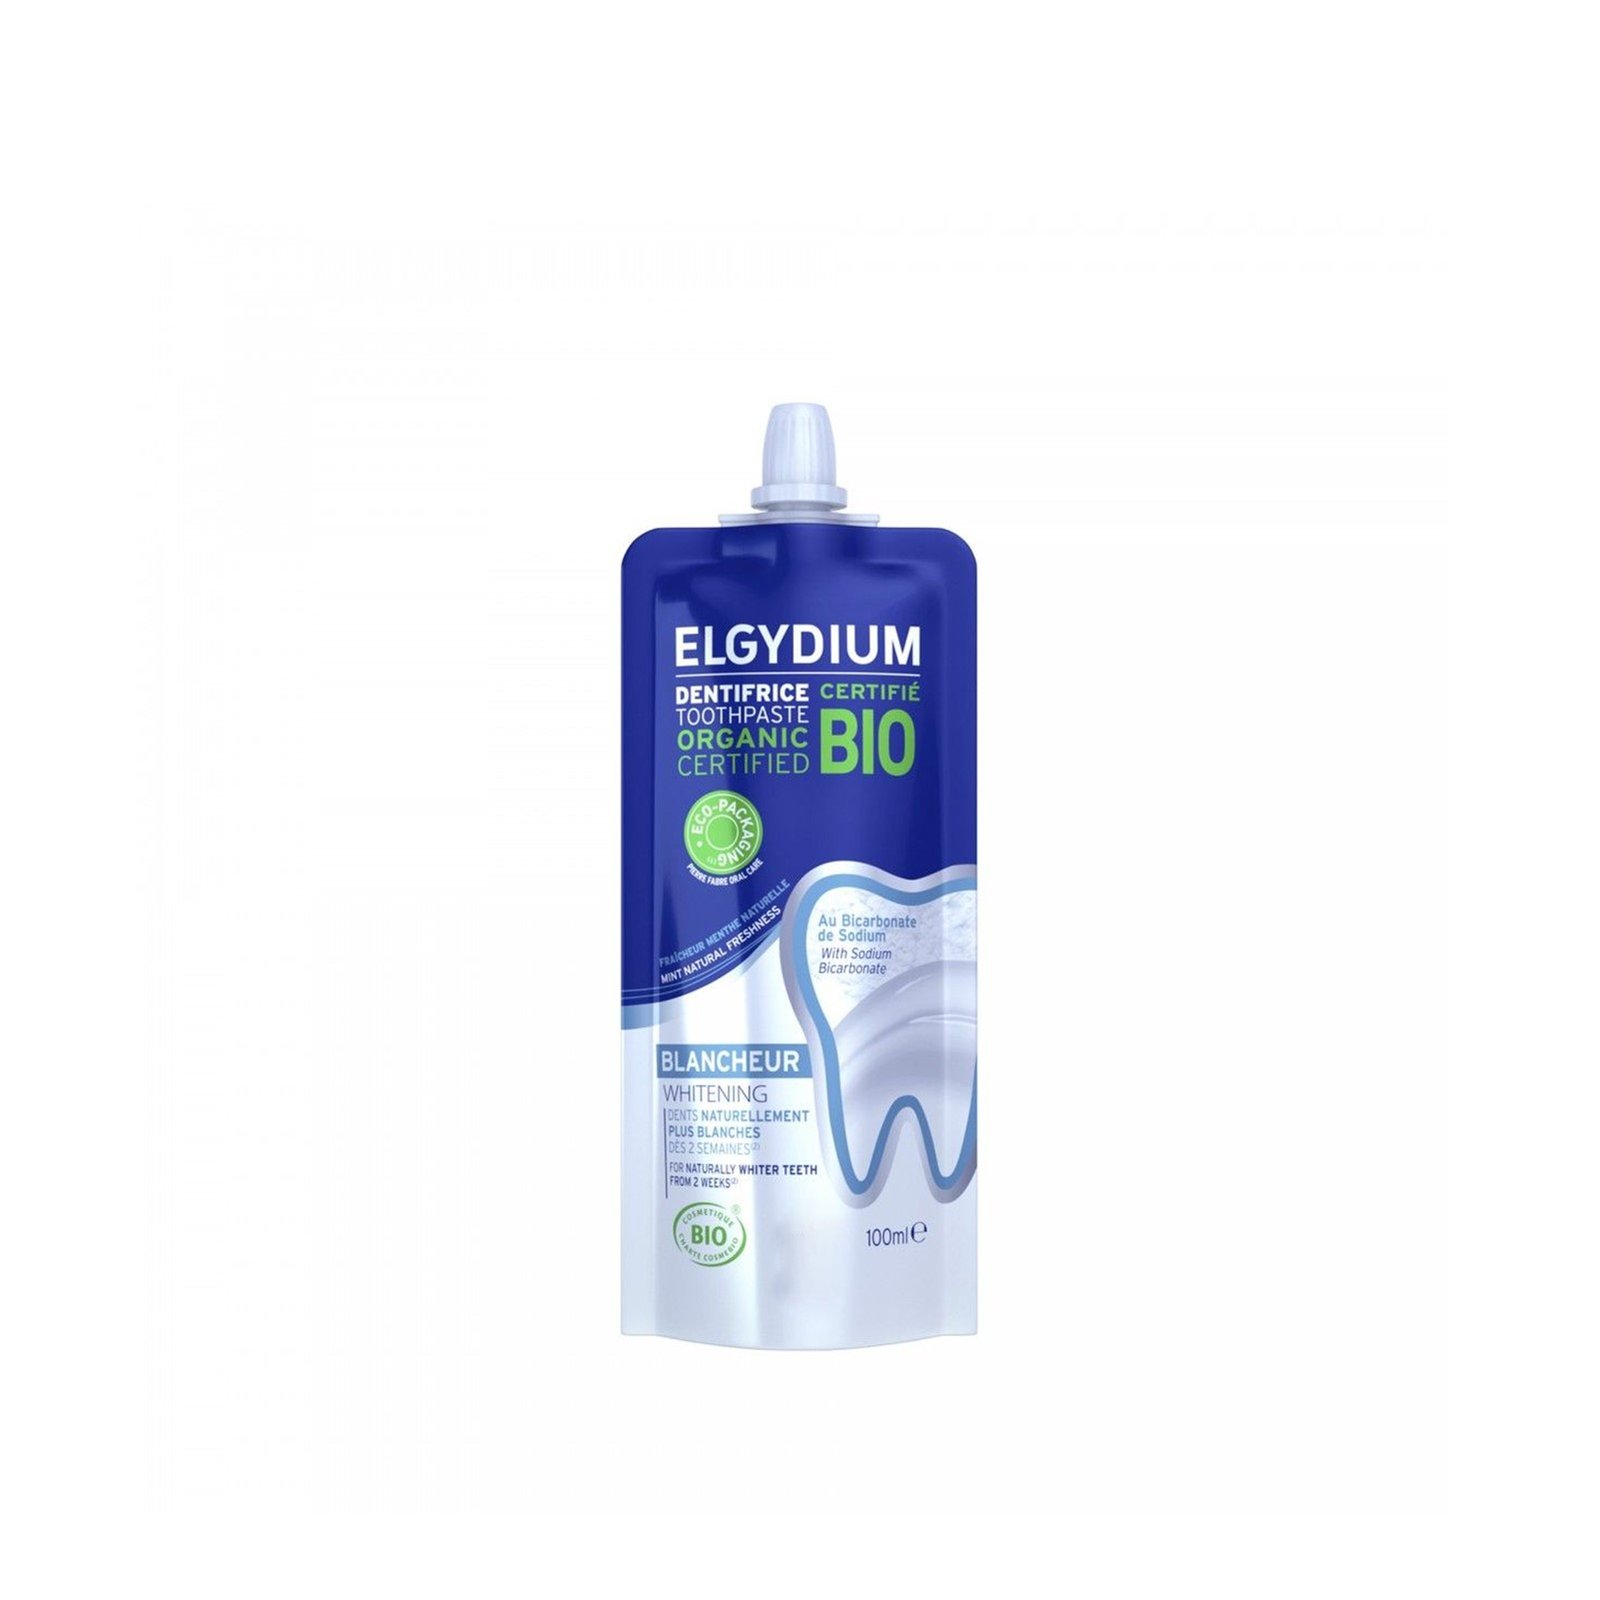 Elgydium Bio Whitening Toothpaste 100ml (3.38 fl oz)